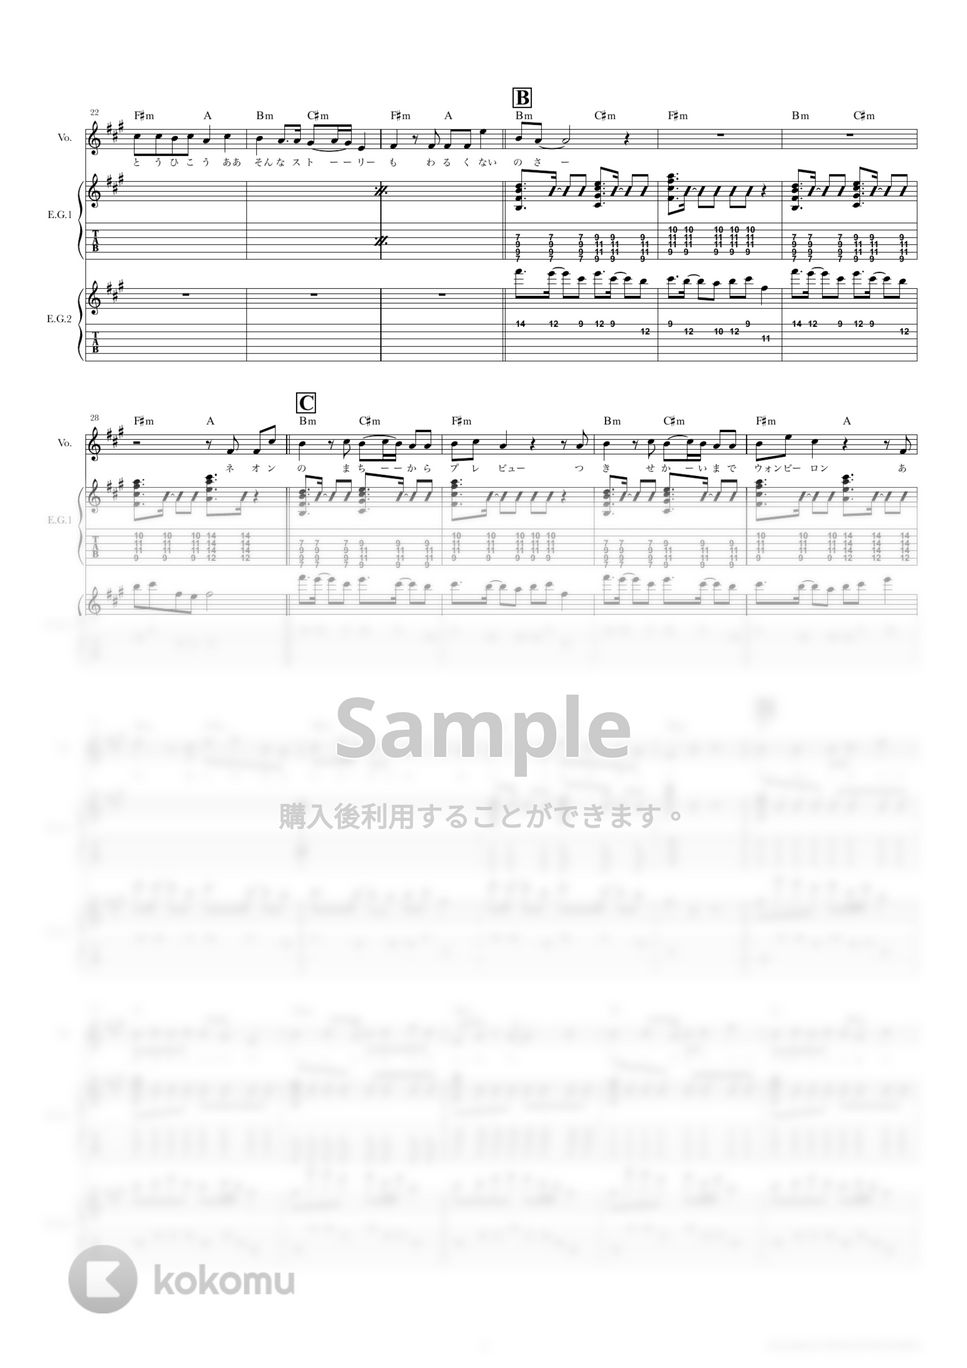 ナユタン星人 - 彗星ハネムーン (ギタースコア・歌詞・コード付き) by TRIAD GUITAR SCHOOL